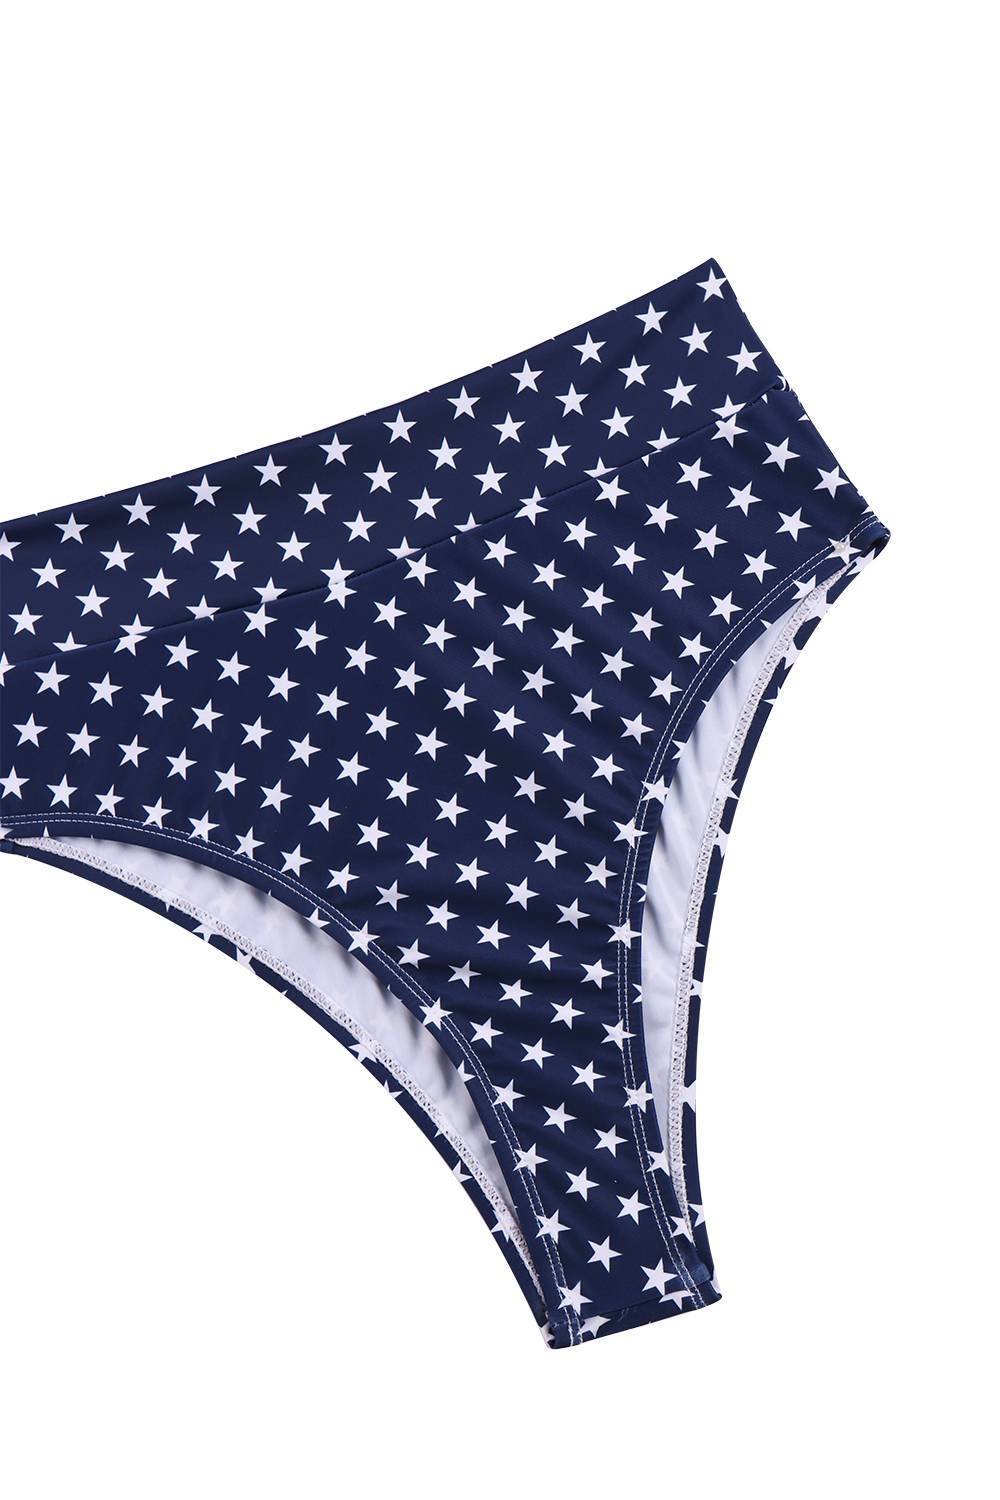 USA Flag Print Bandeau High Waisted Bikini Two Piece Bathing Suits for Women